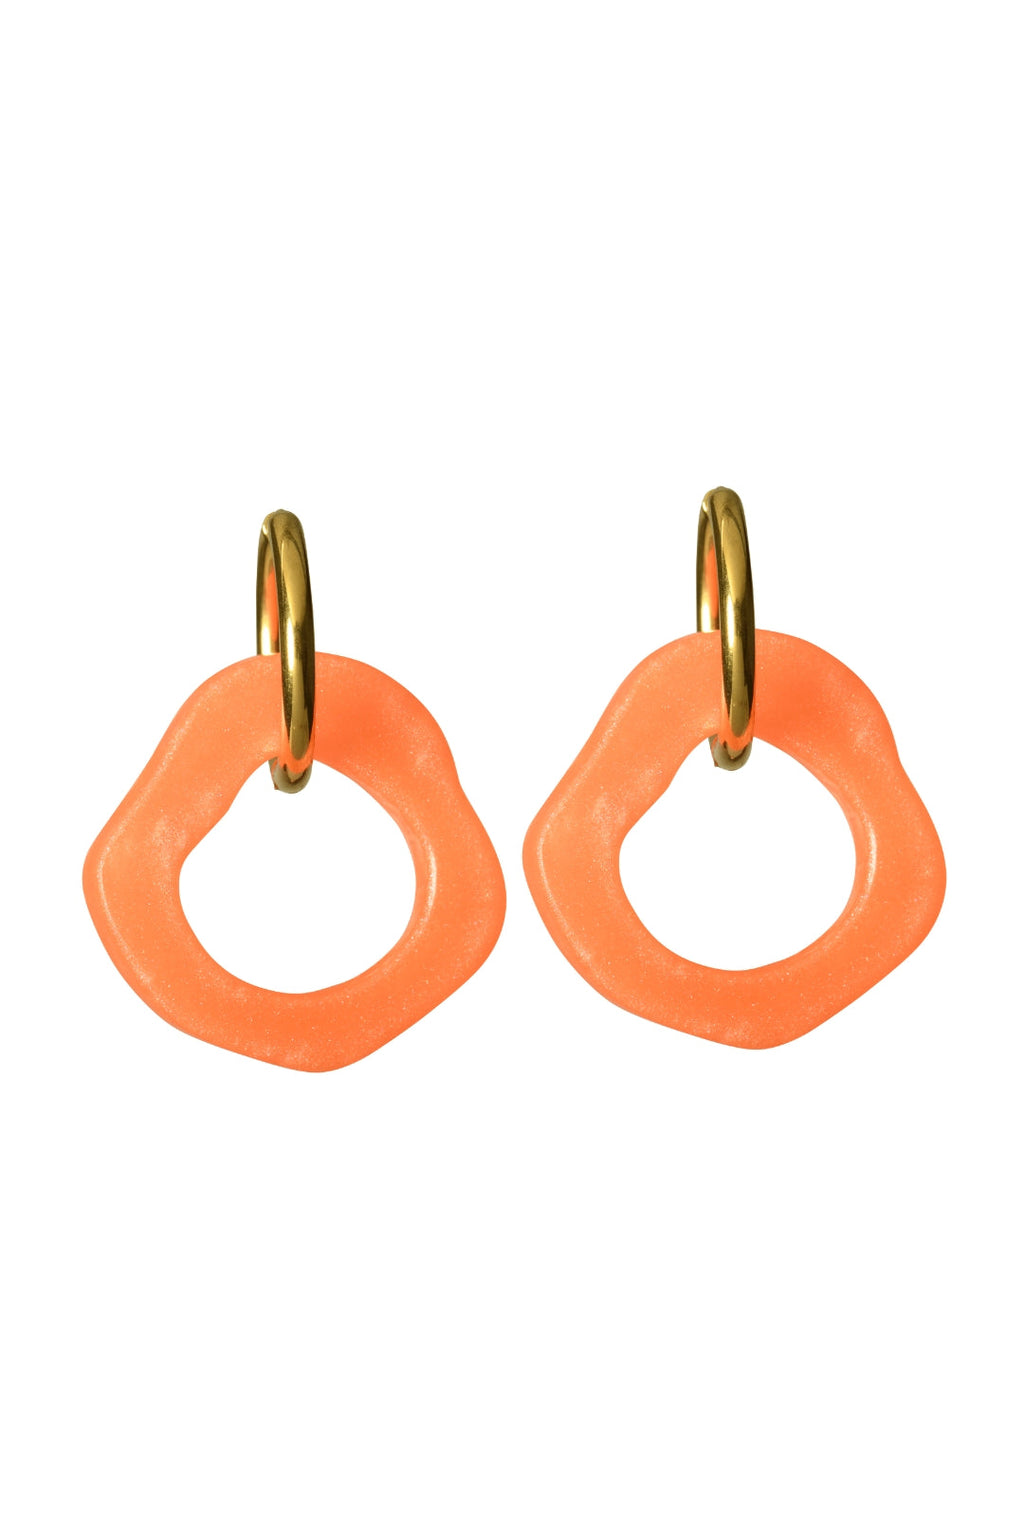 Ear Candy Orange Mini Earrings